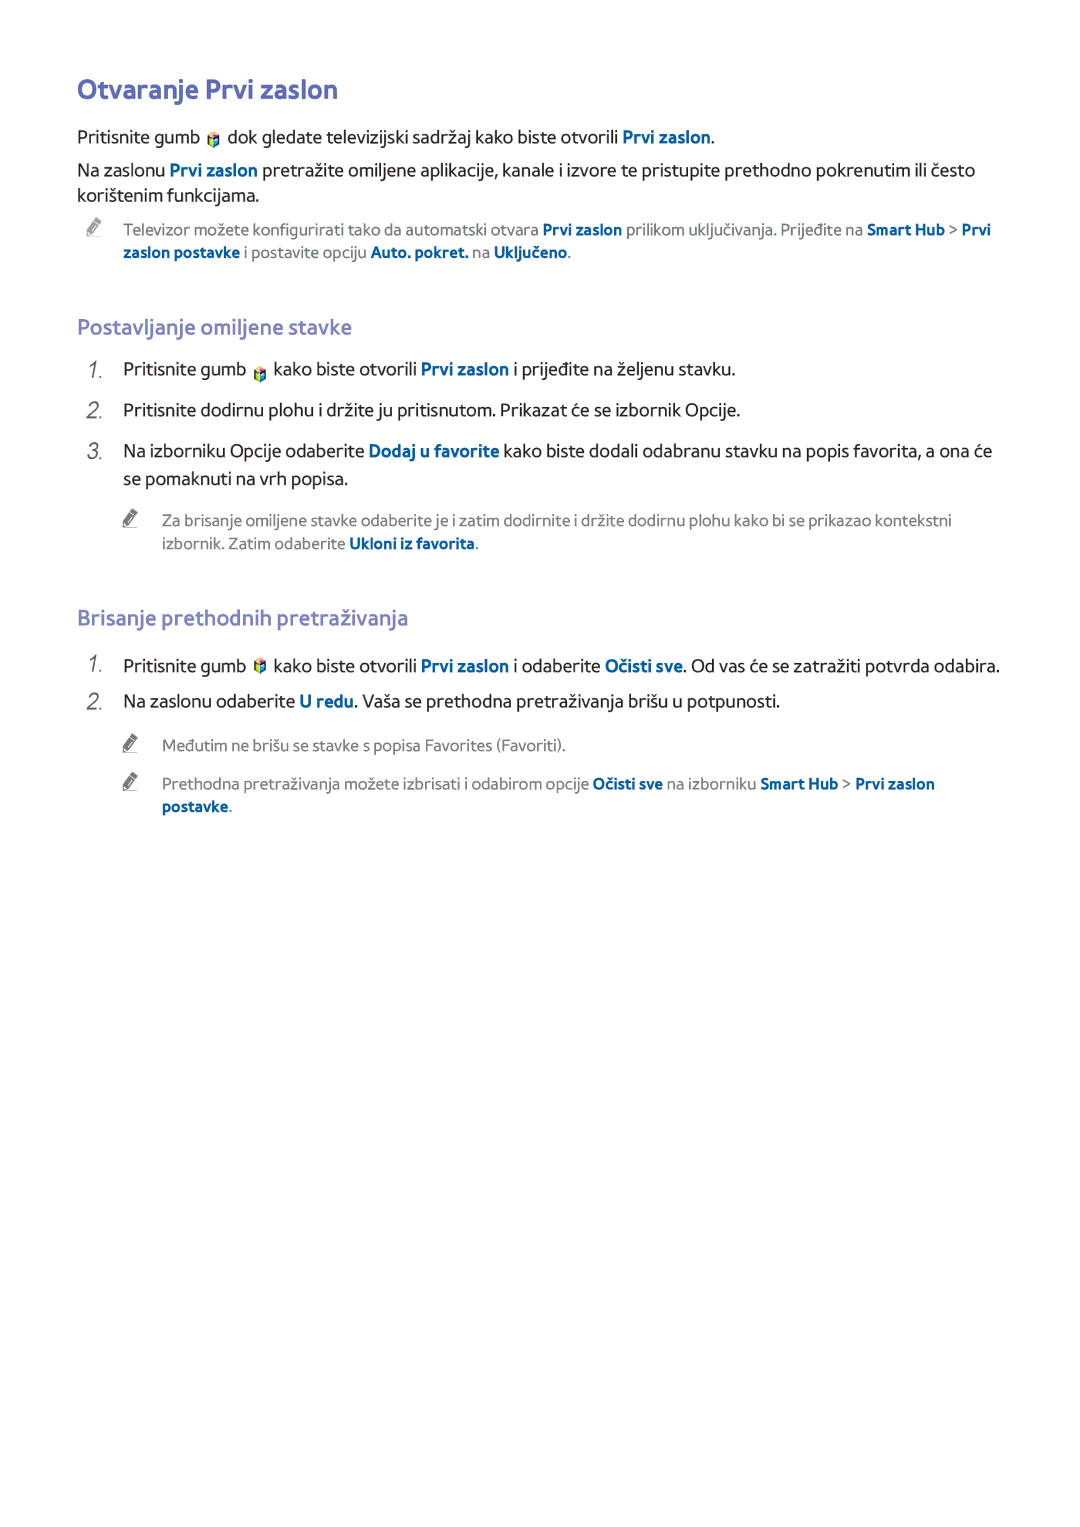 Samsung UE55HU8500TXXH manual Otvaranje Prvi zaslon, Postavljanje omiljene stavke, Brisanje prethodnih pretraživanja 